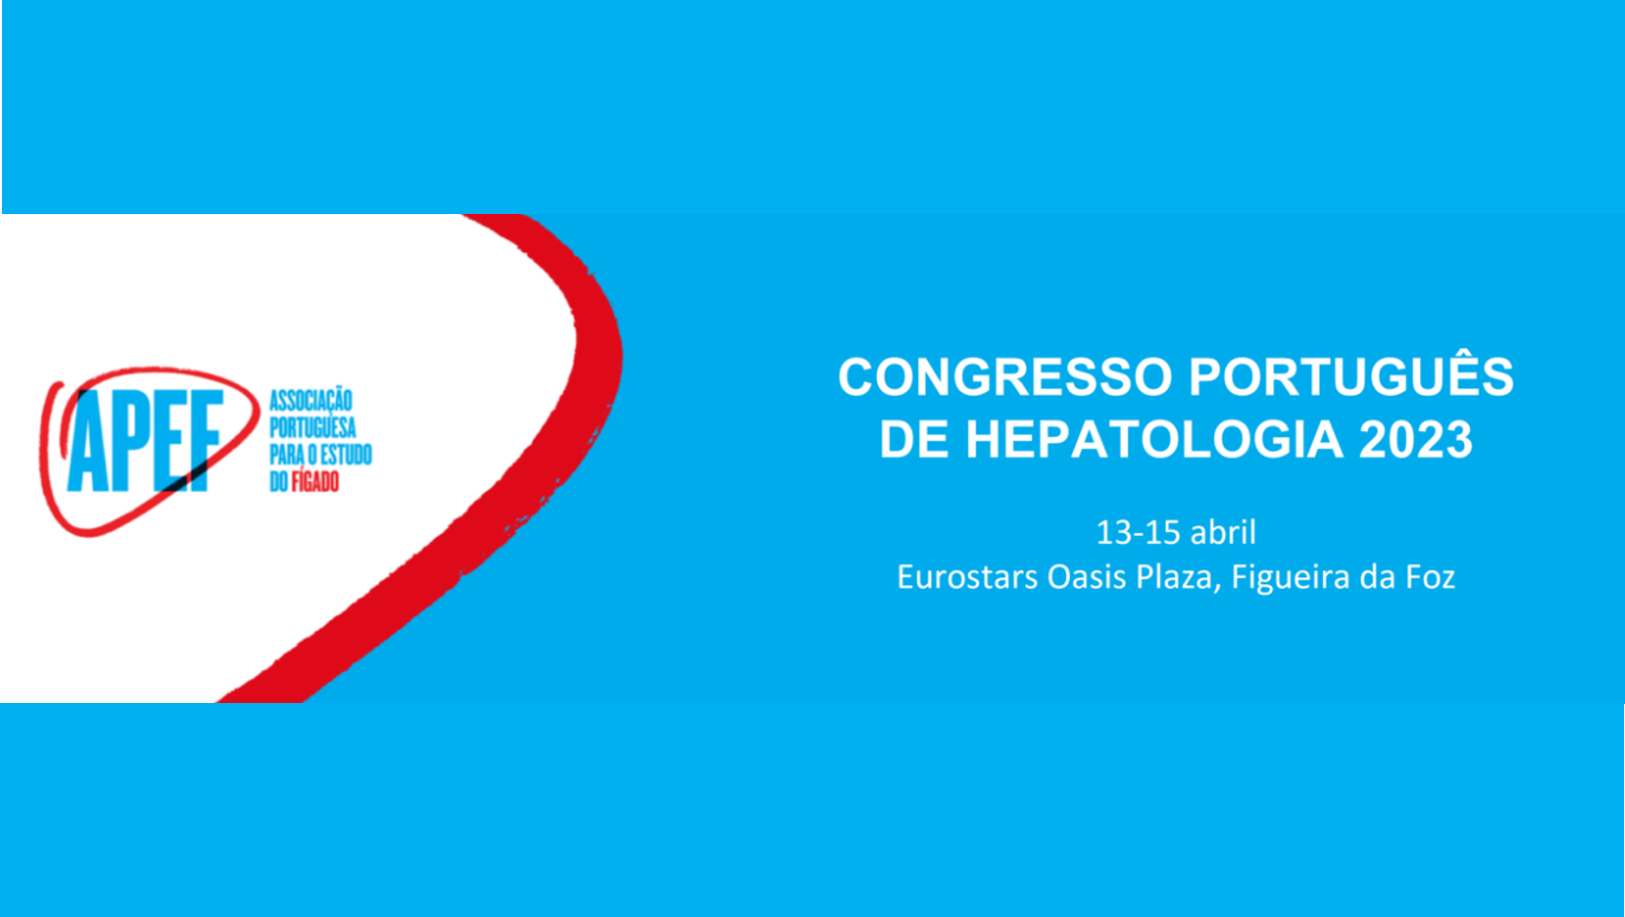 Congresso Português de Hepatologia 2023